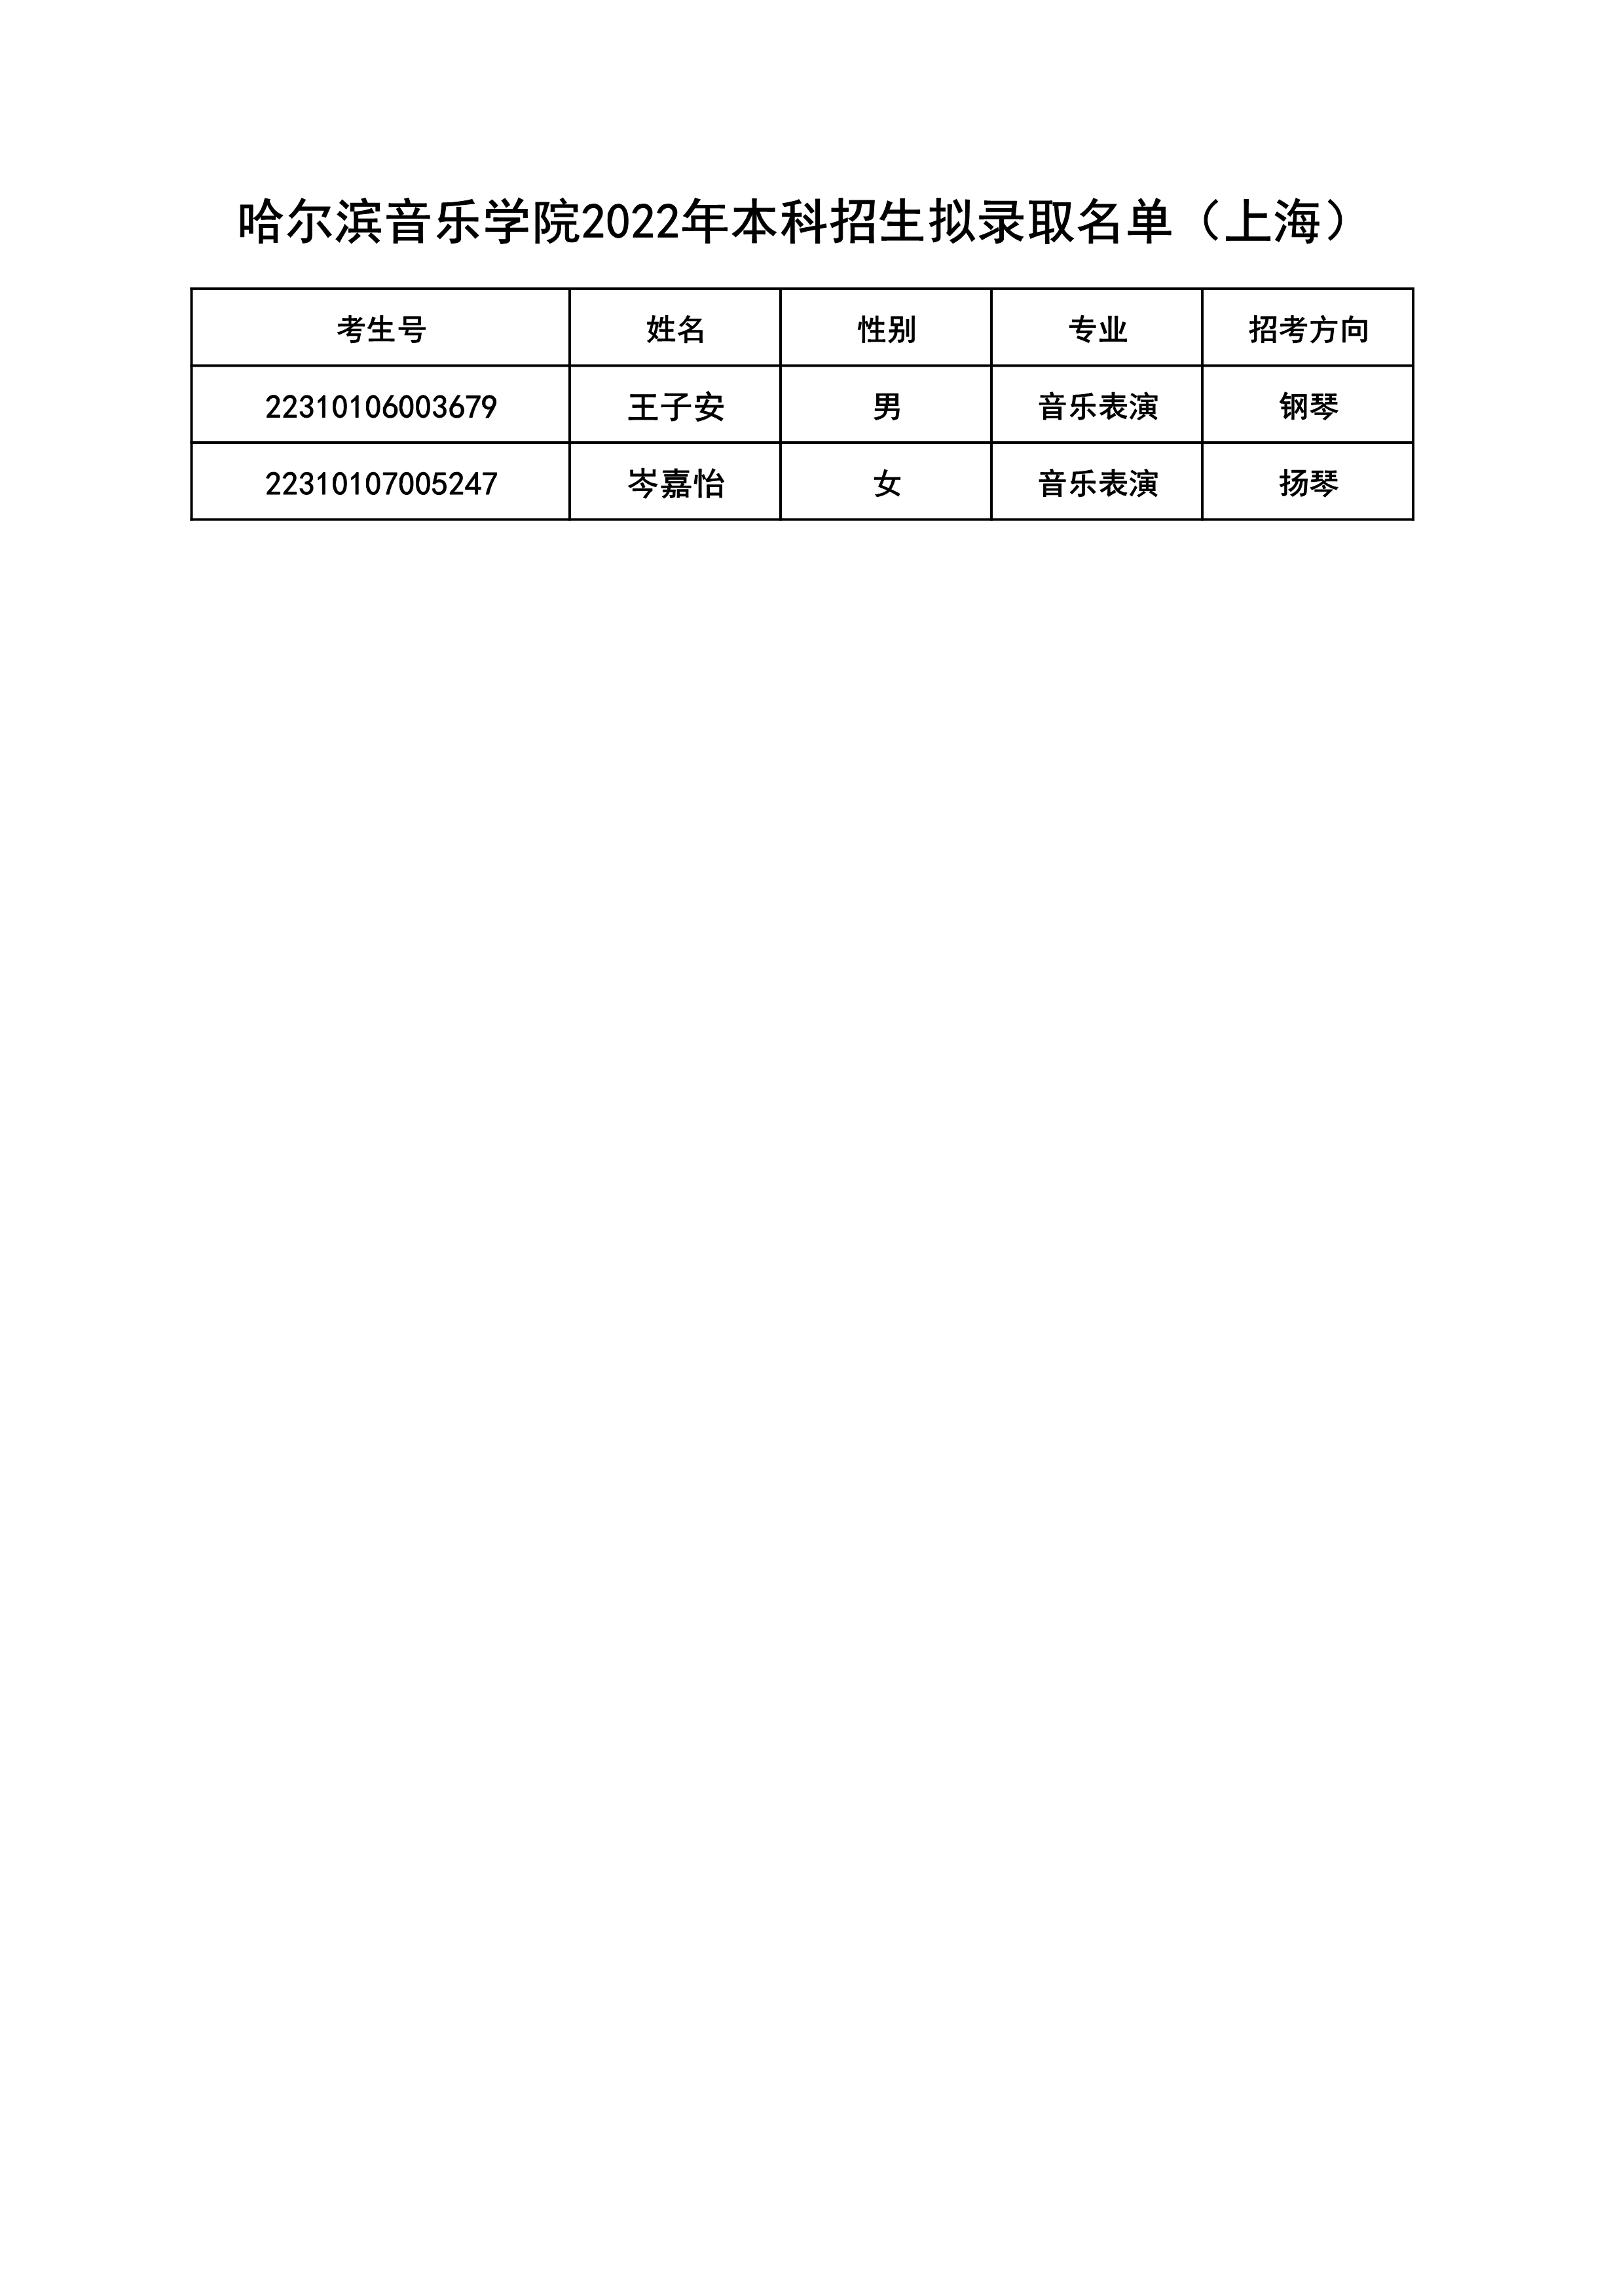 附件1+哈尔滨音乐学院2022年本科招生拟录取名单（上海）_1.jpg